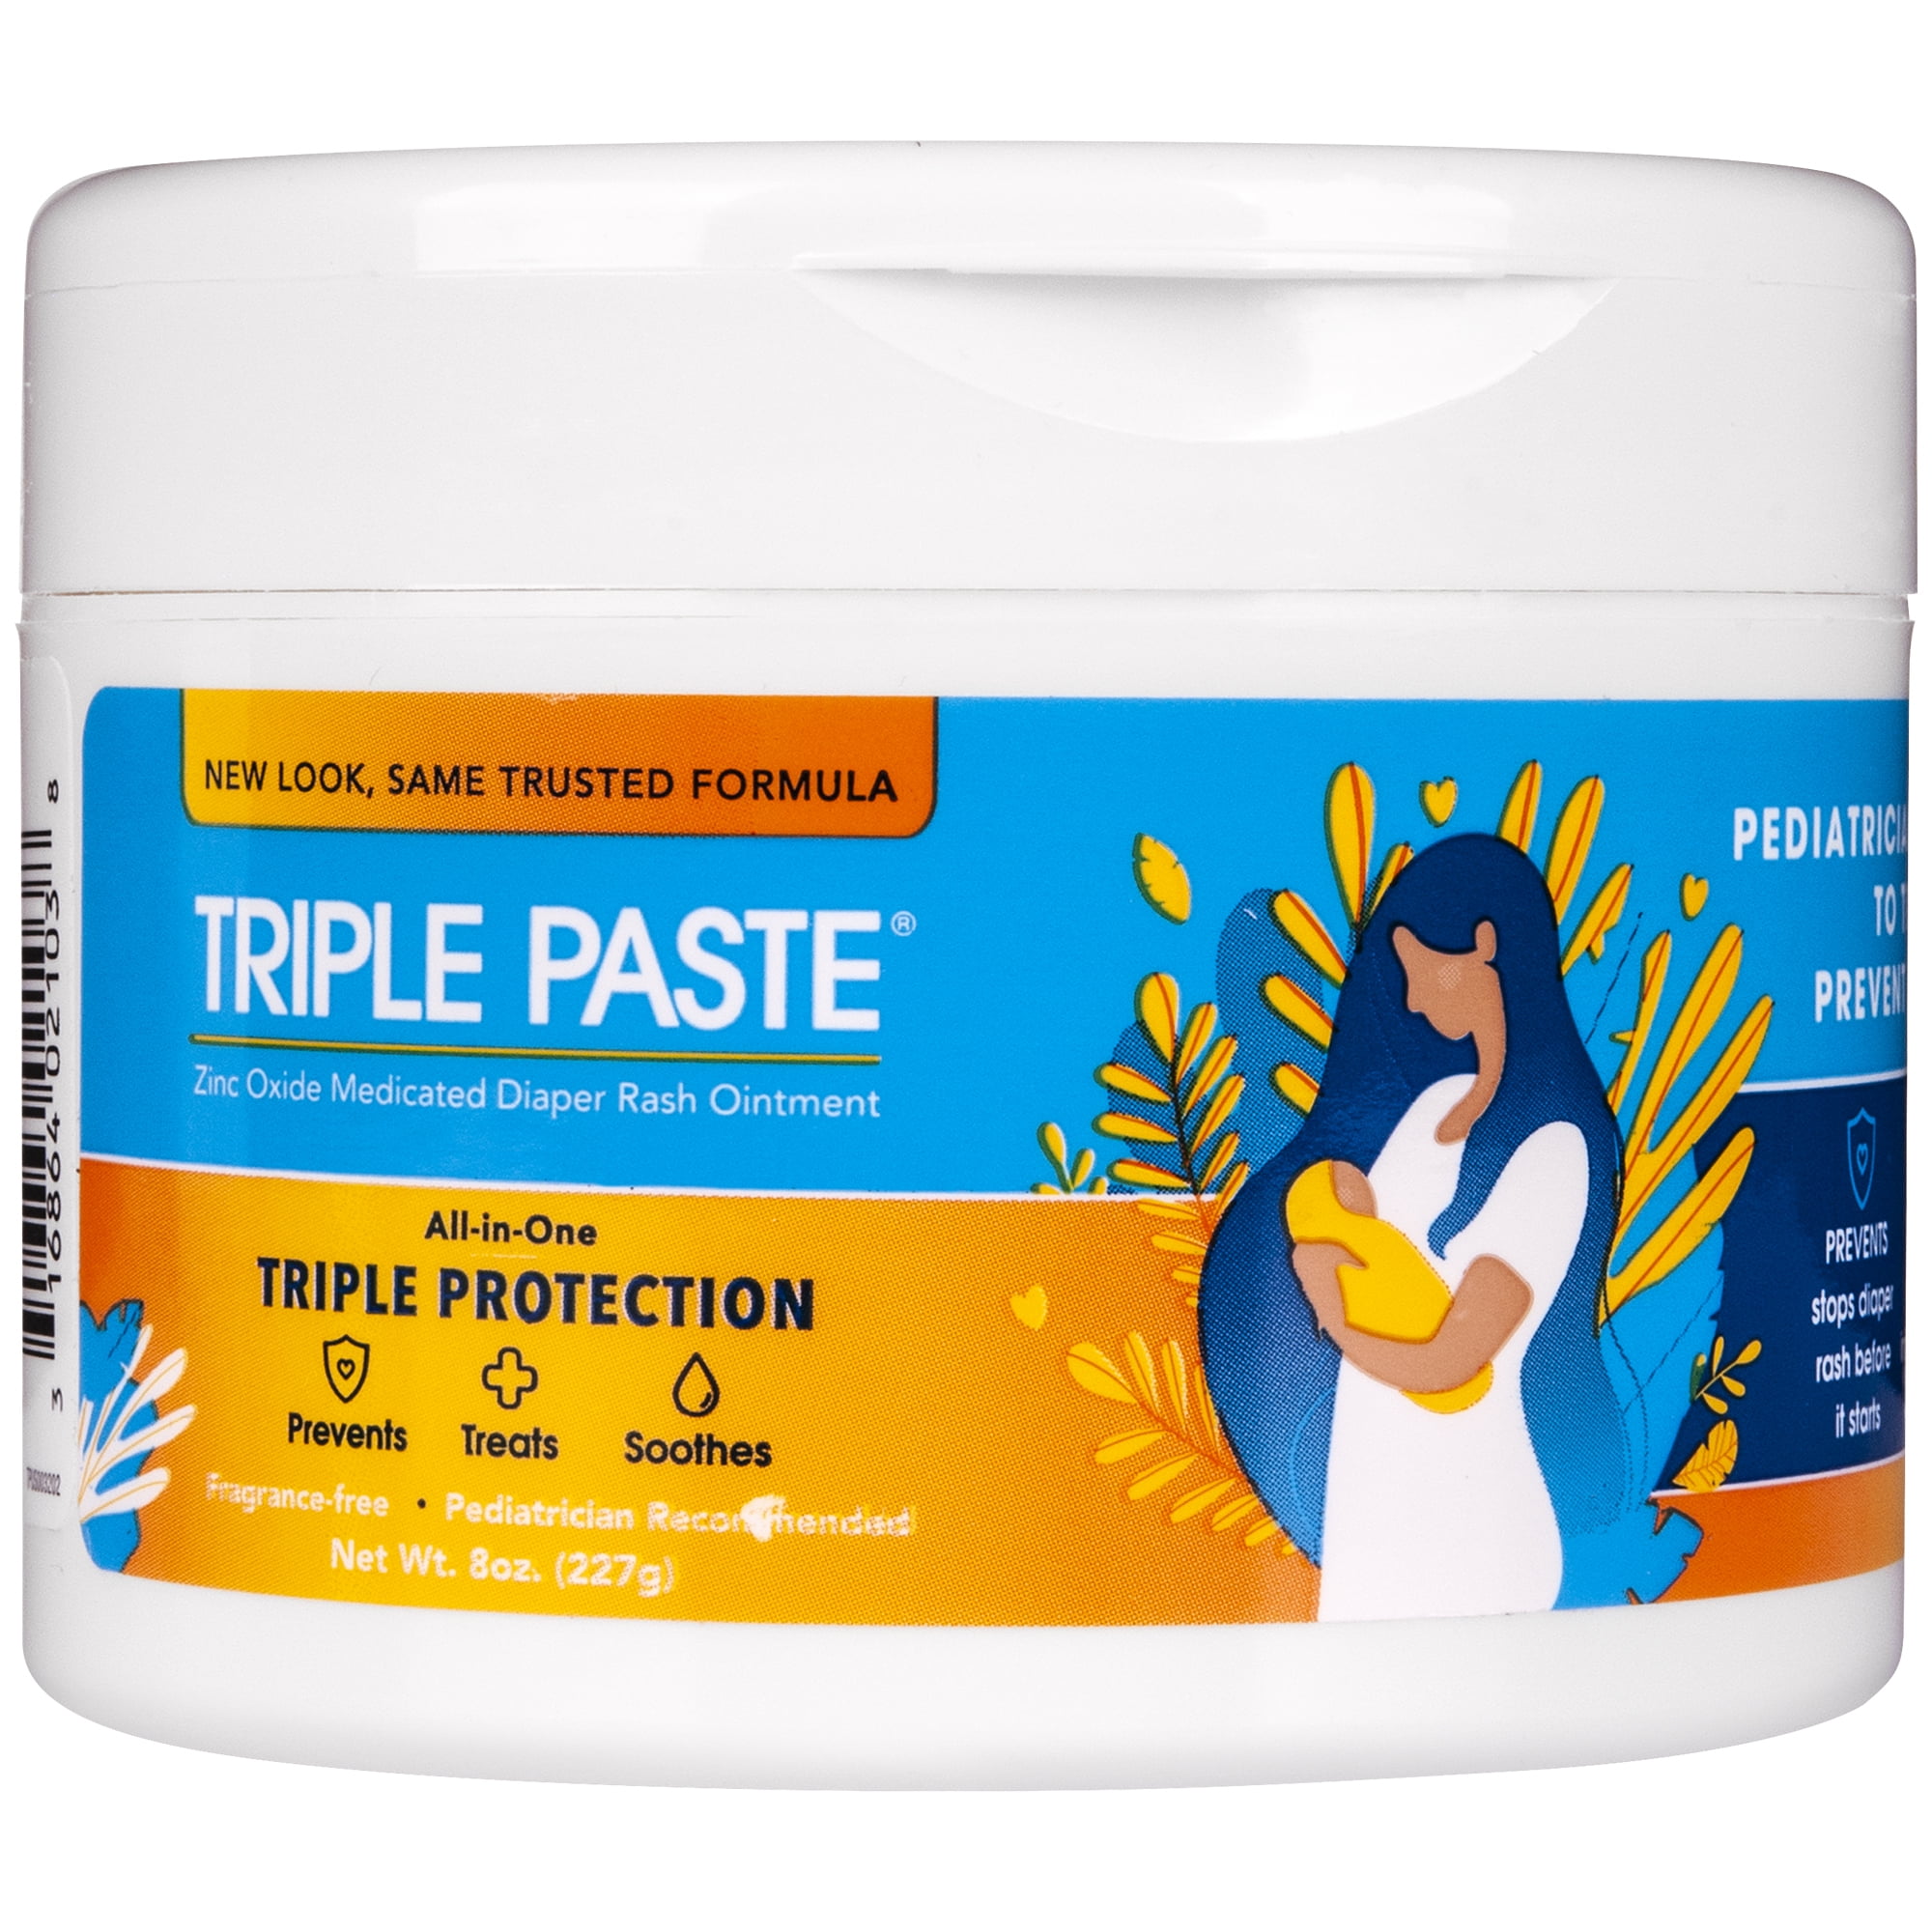 Triple Paste Zinc Oxide Medicated Diaper Rash Ointment, 8 oz